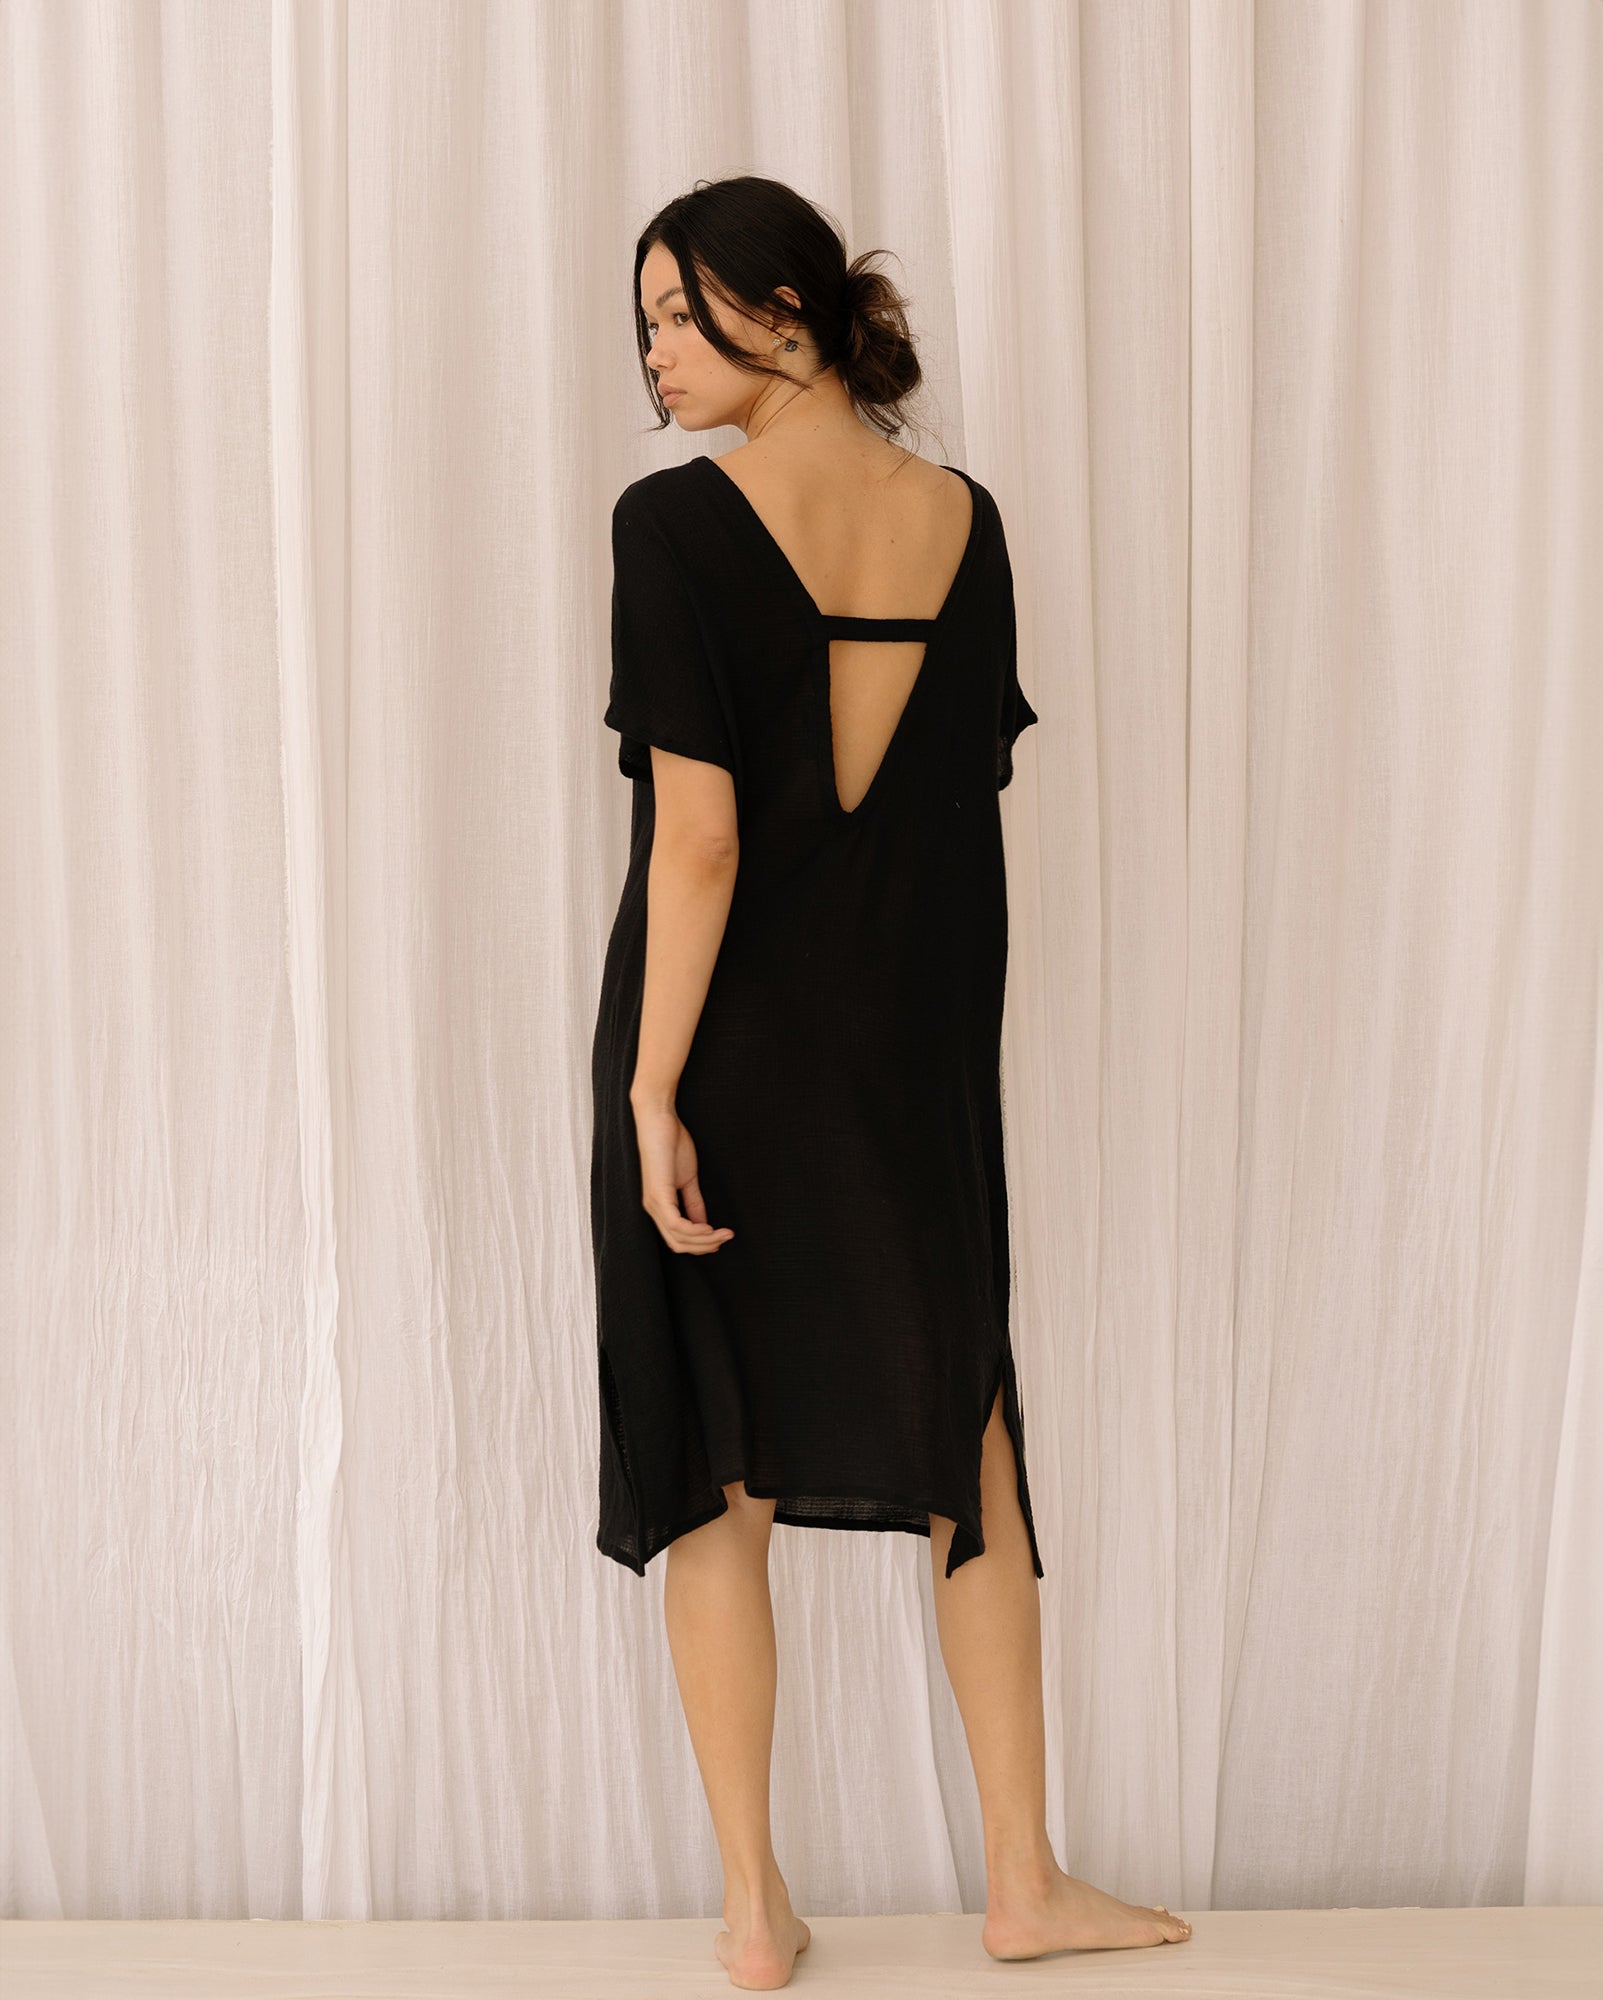 Black, soft cotton Asya dress.